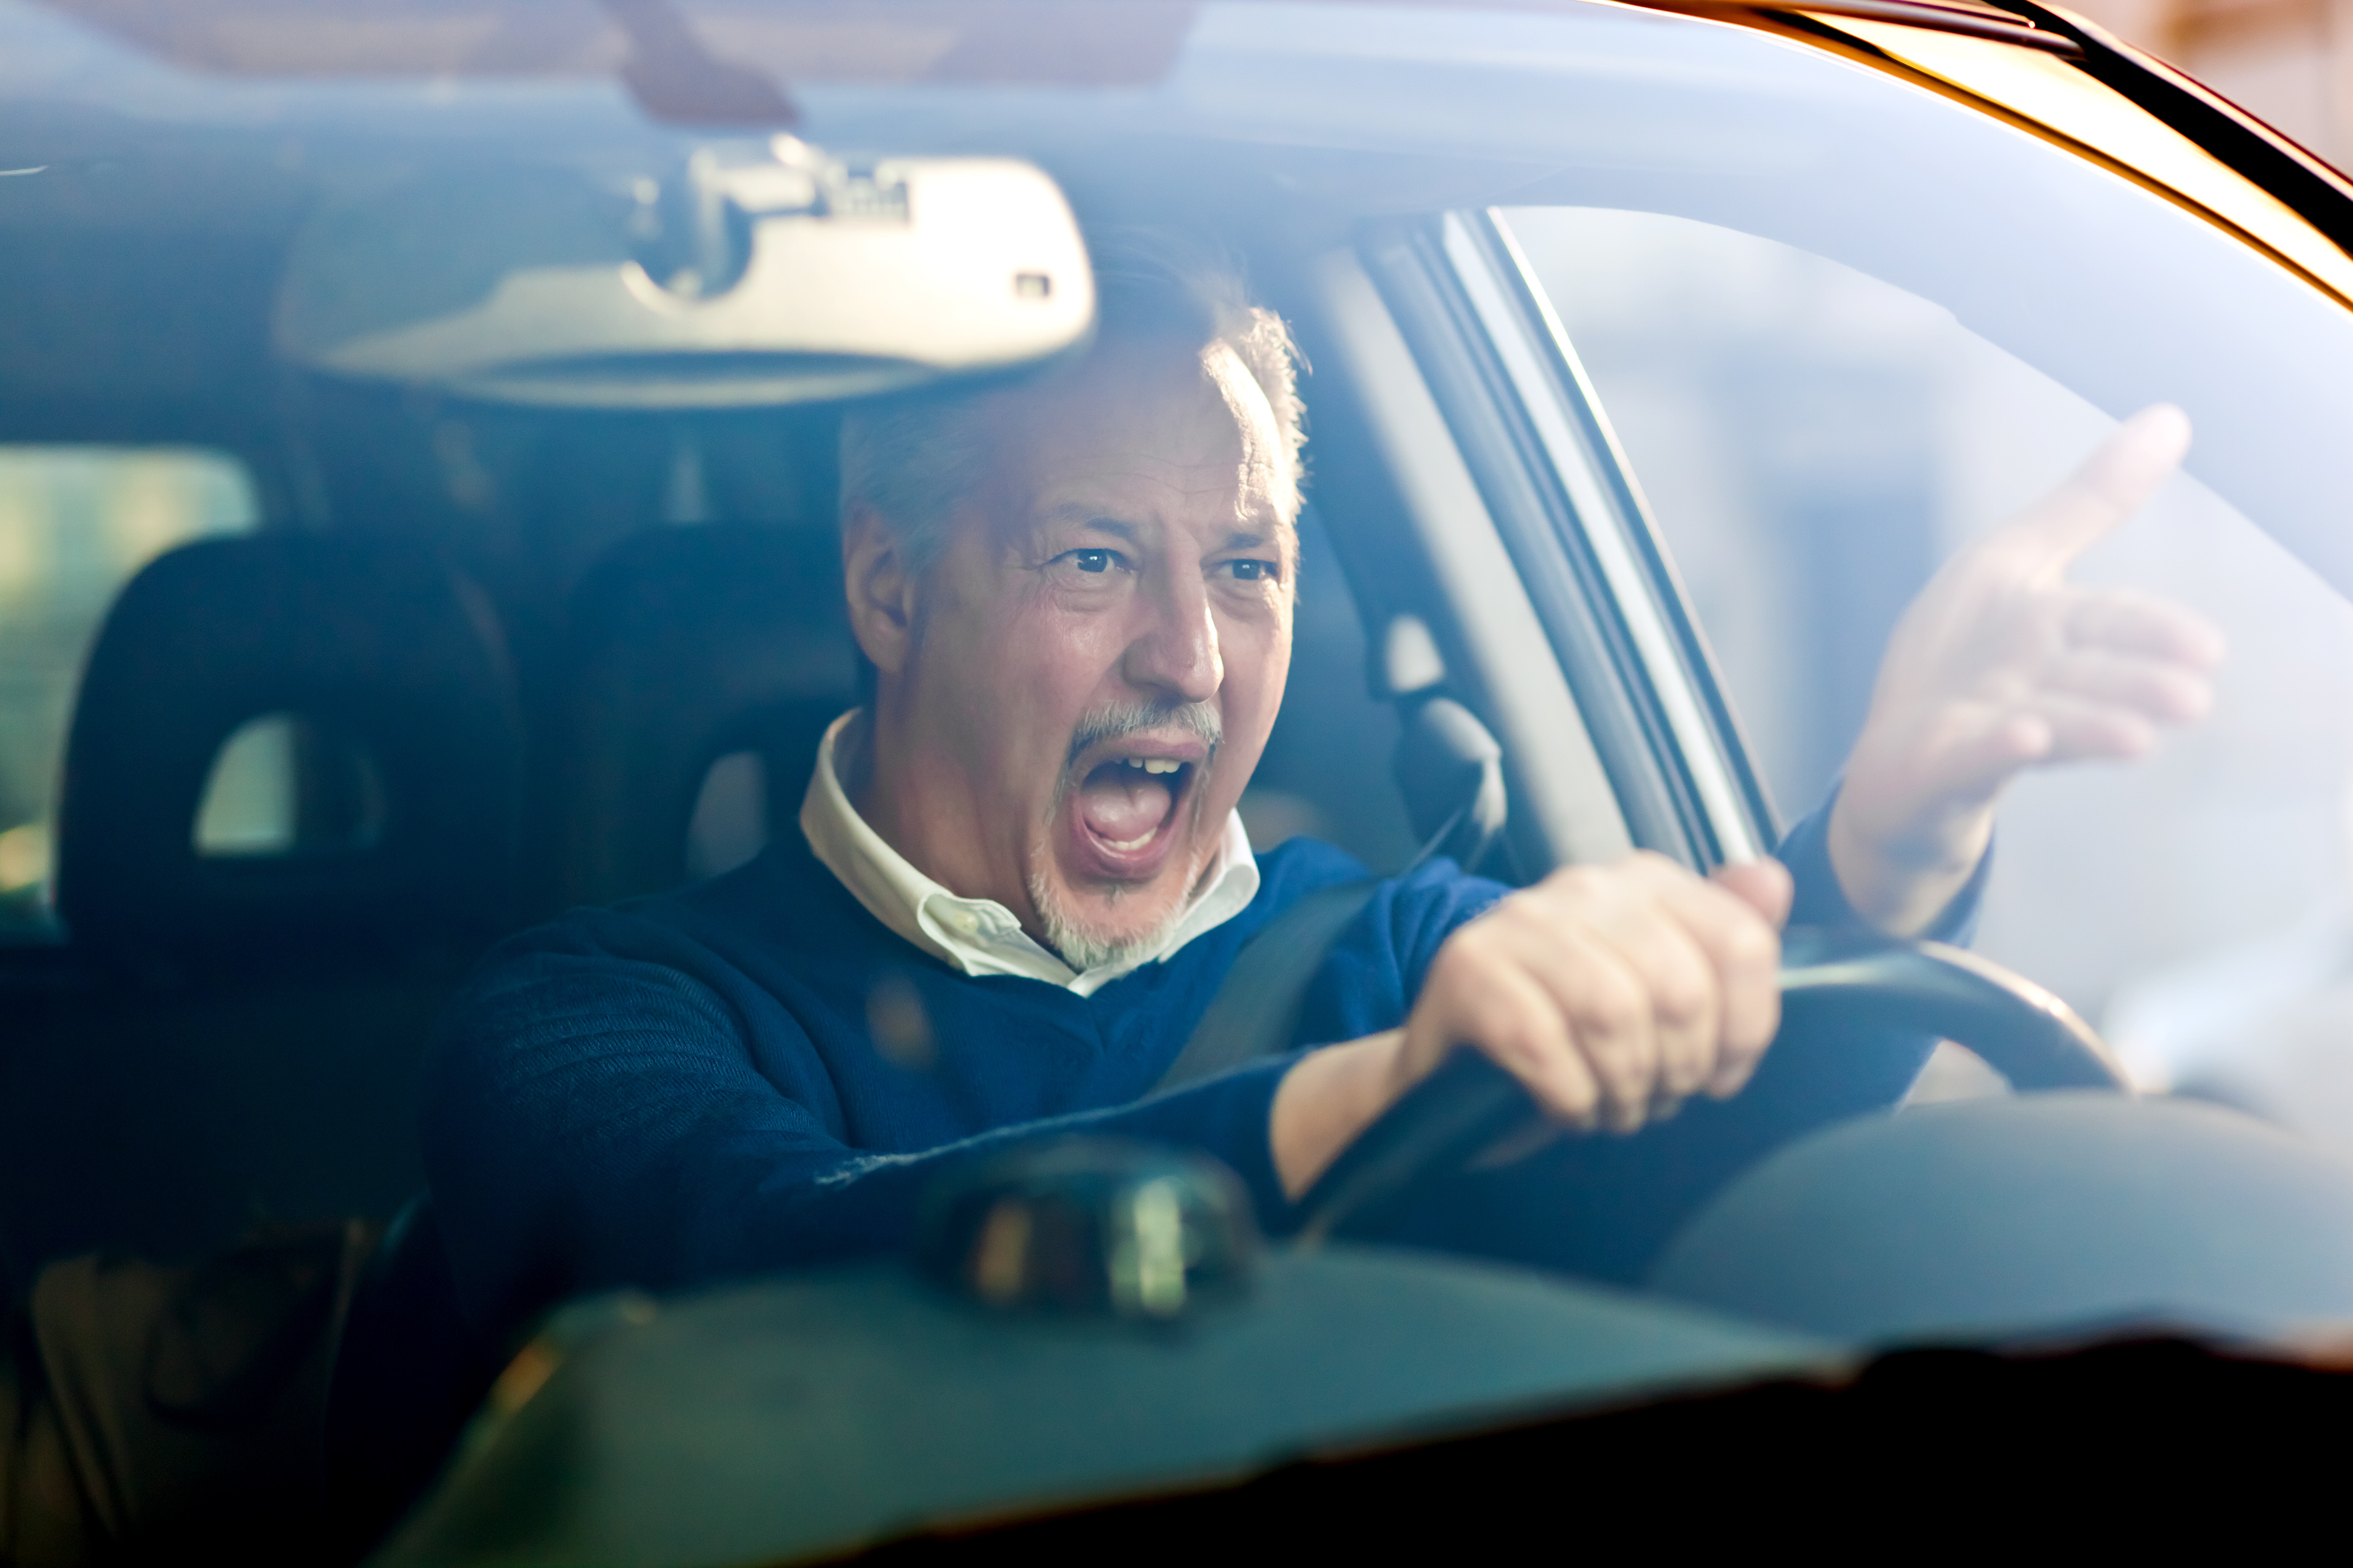 Homme en colère dans une voiture | Source : Shutterstock